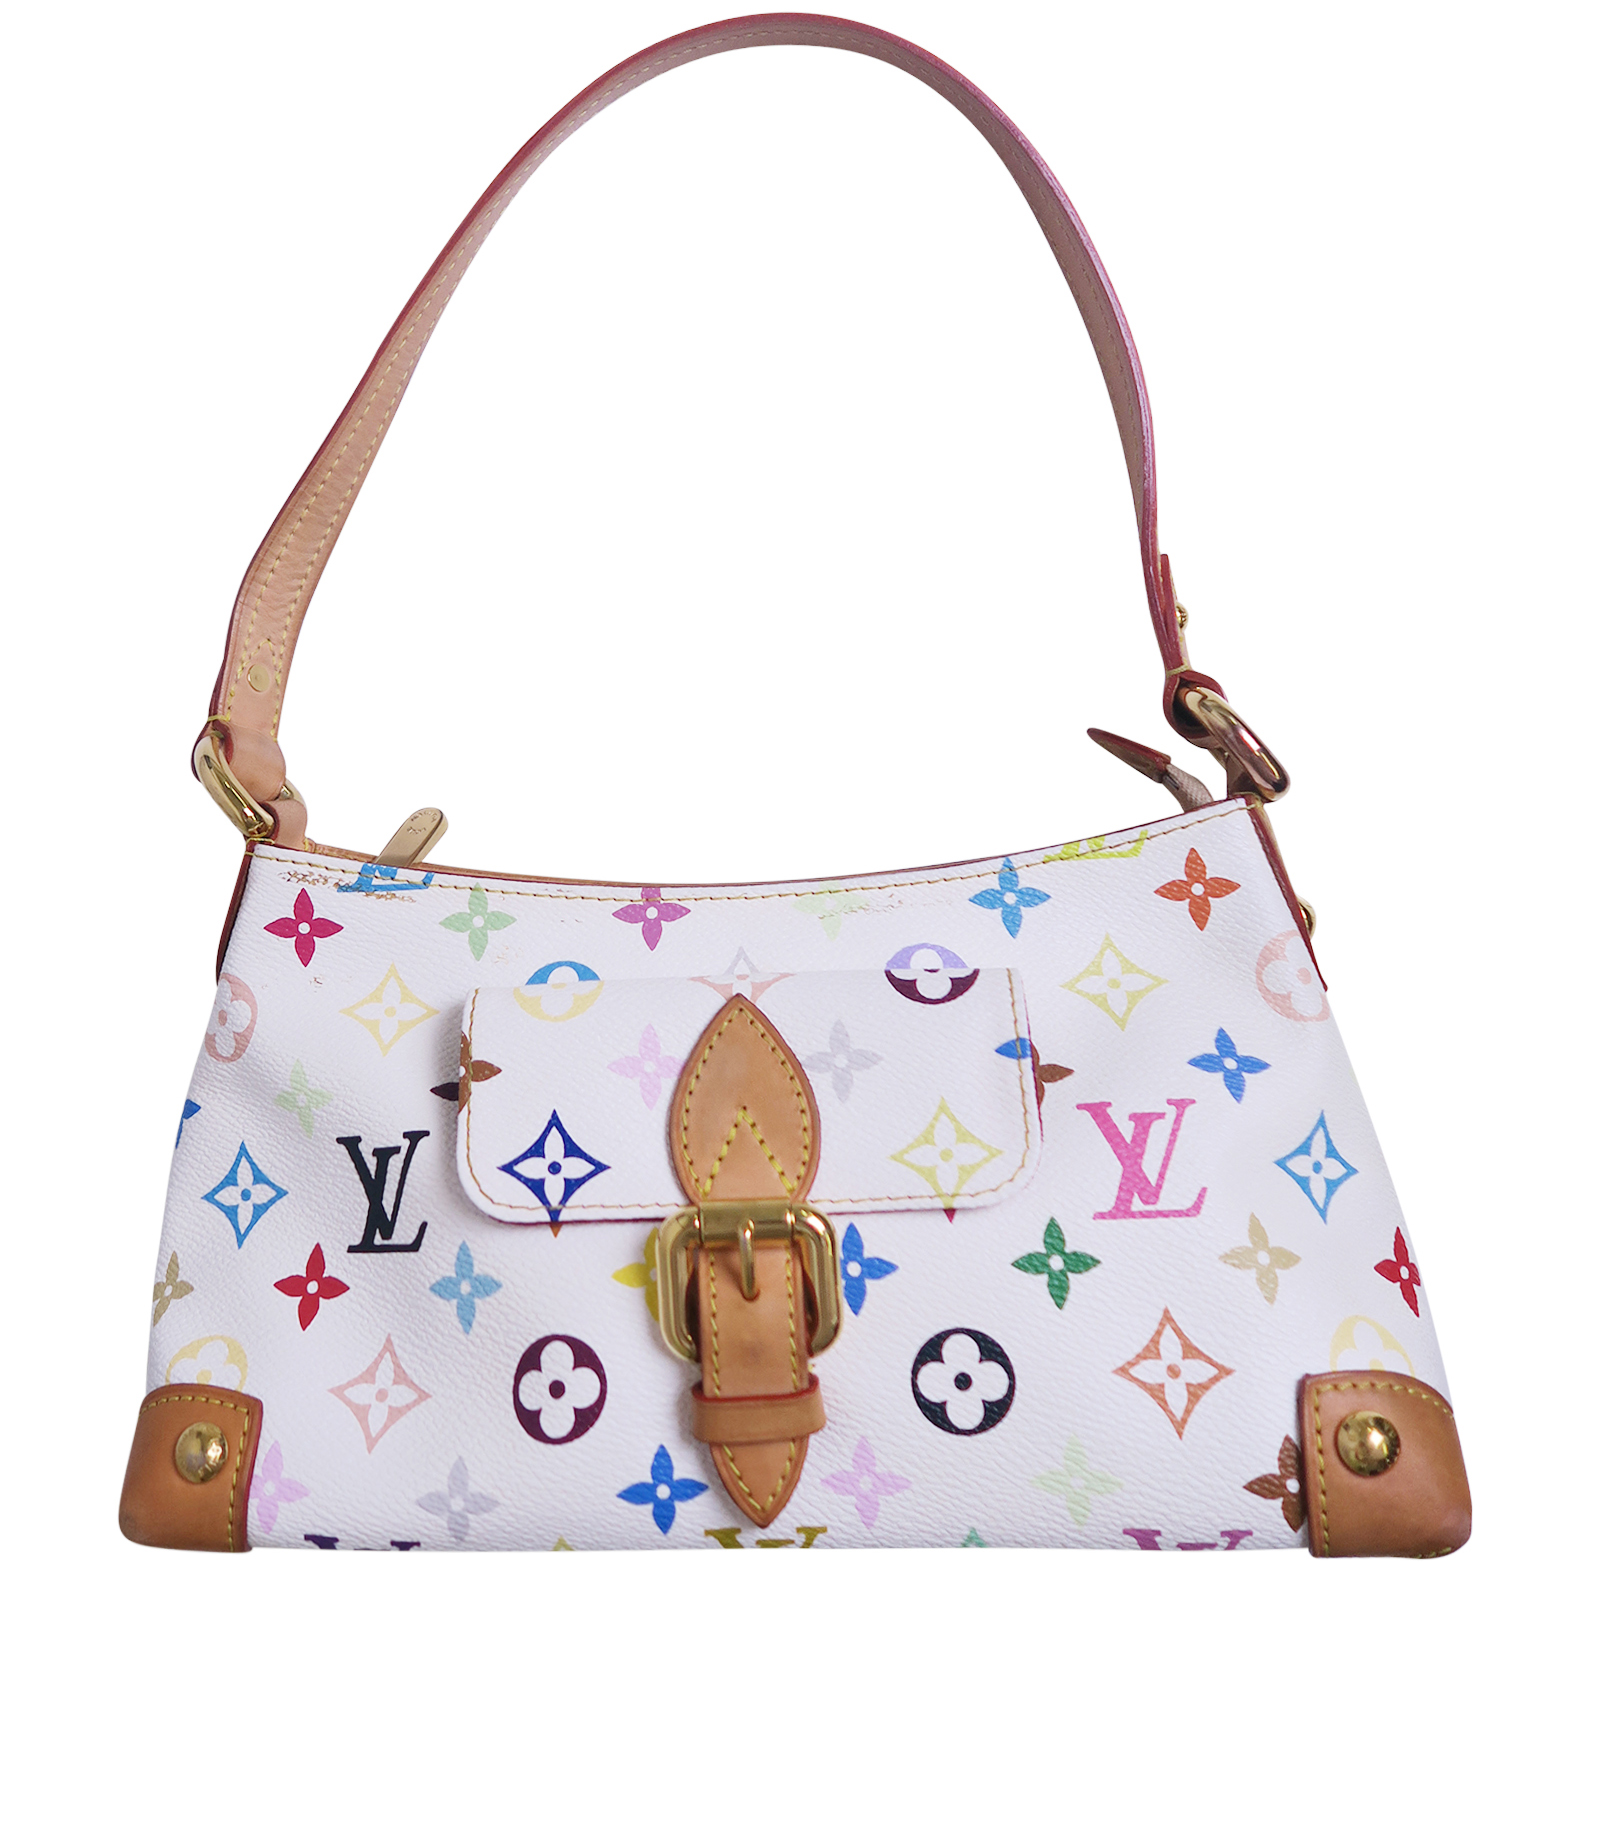 Louis Vuitton Multicolor Eliza One Shoulder Bag Blonde Women'S M40098  790